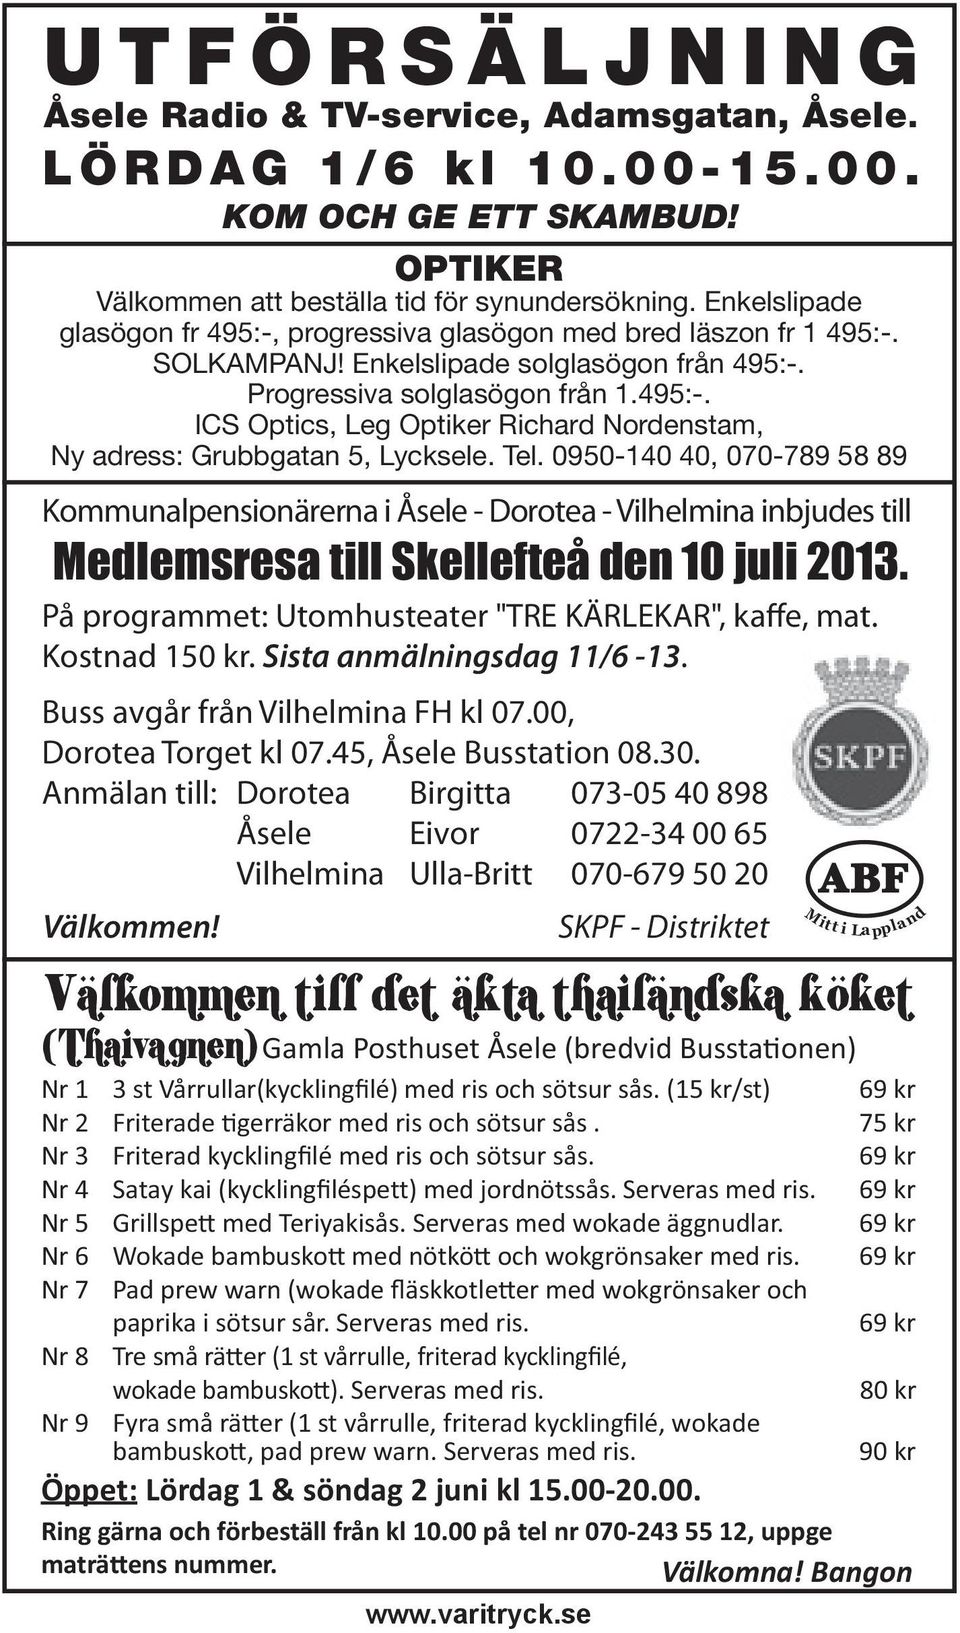 Tel. 0950-140 40, 070-789 58 89 Kommunalpensionärerna i Åsele - Dorotea - Vilhelmina inbjudes till Medlemsresa till Skellefteå den 10 juli 2013.